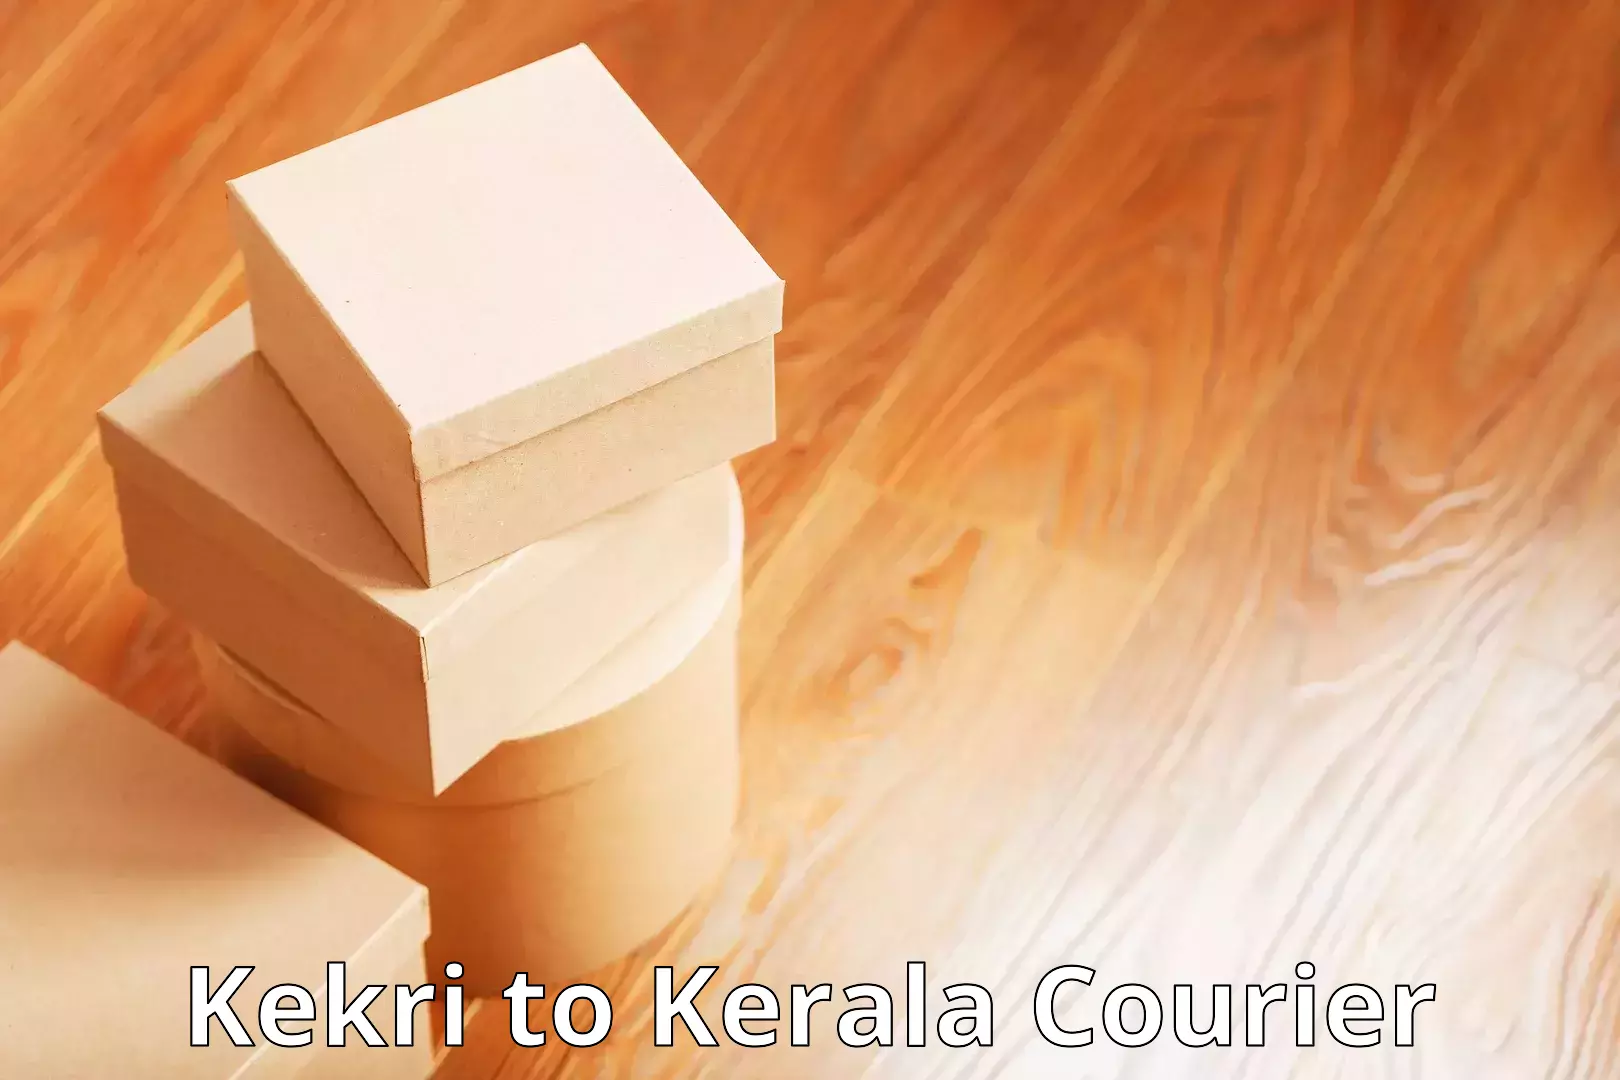 Efficient parcel tracking Kekri to Manjeshwar